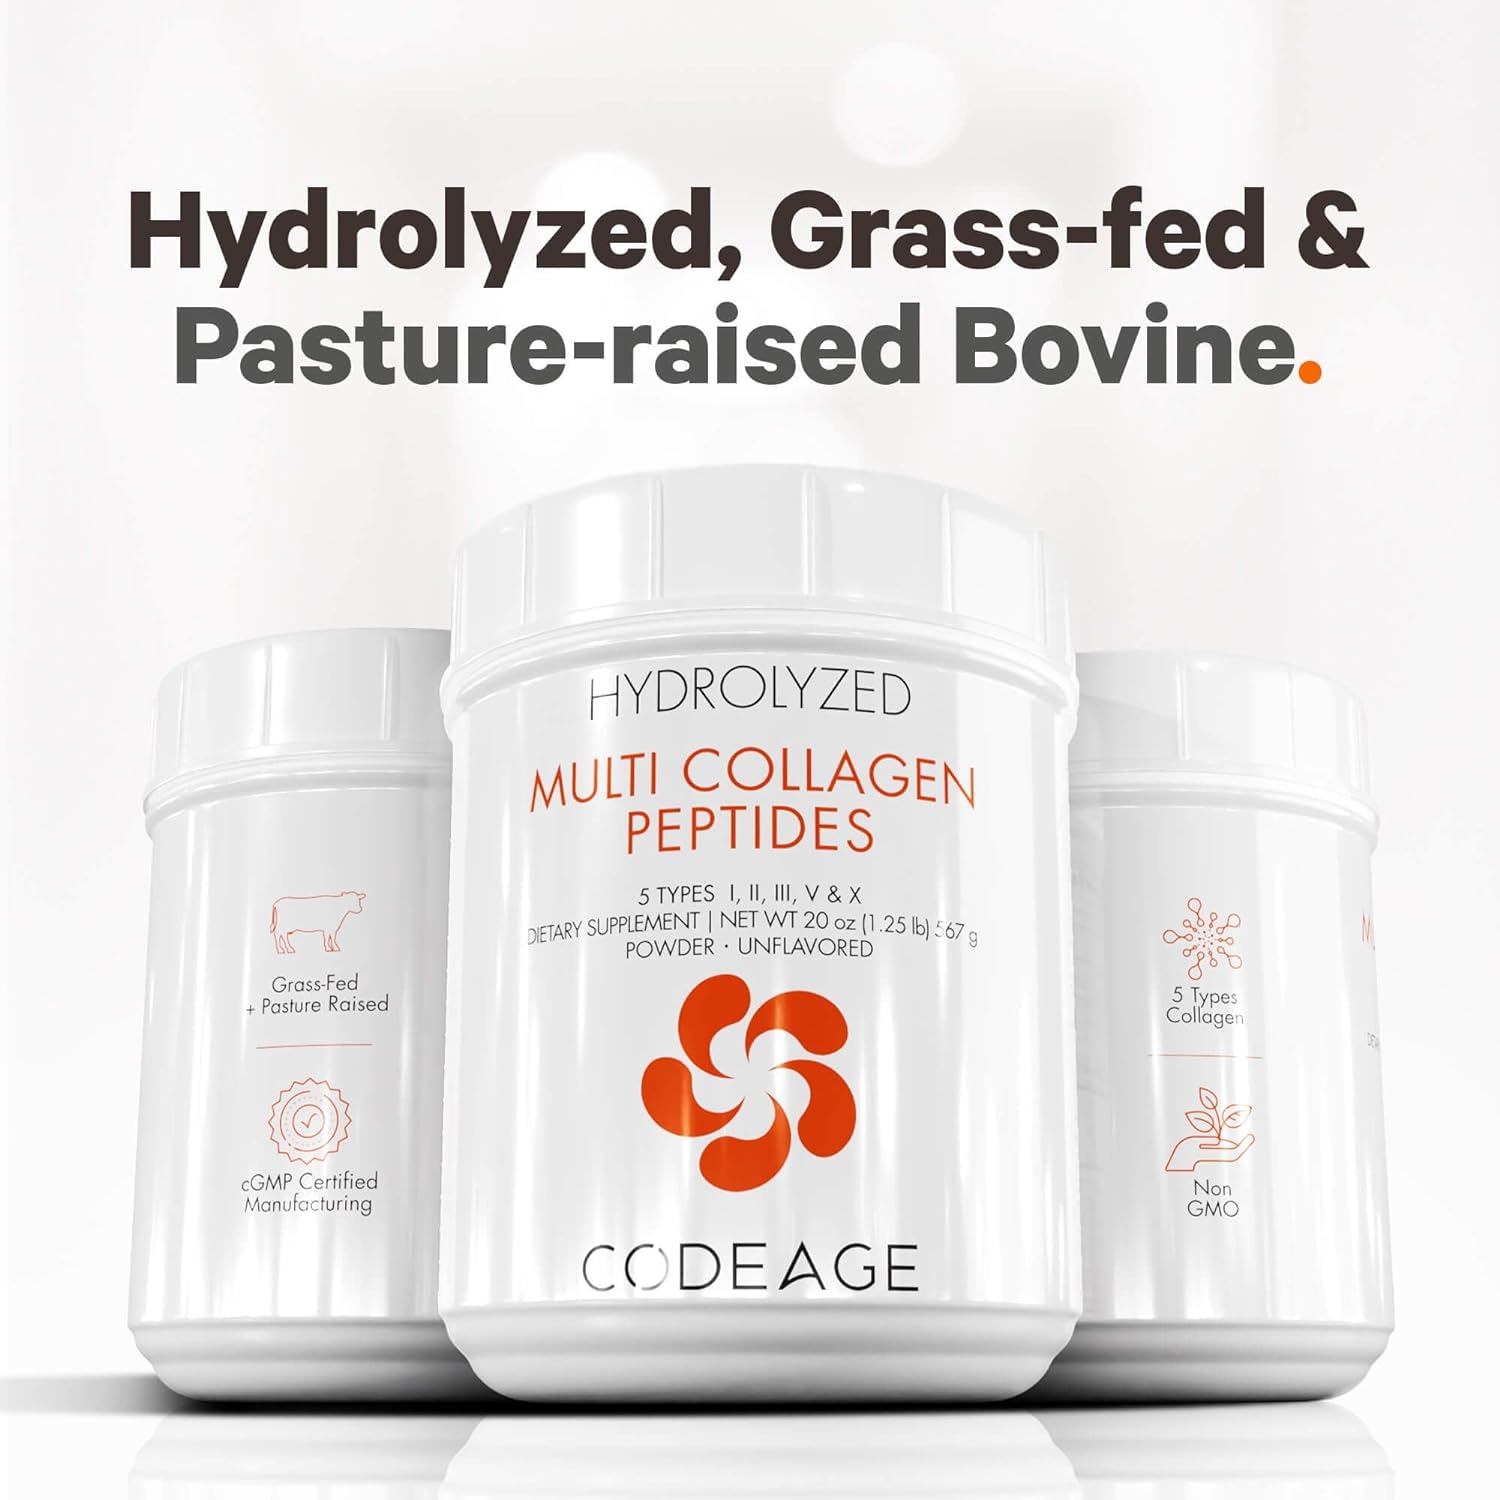 Codeage Multi Collagen Protein Powder Peptides, 2-Month Supp